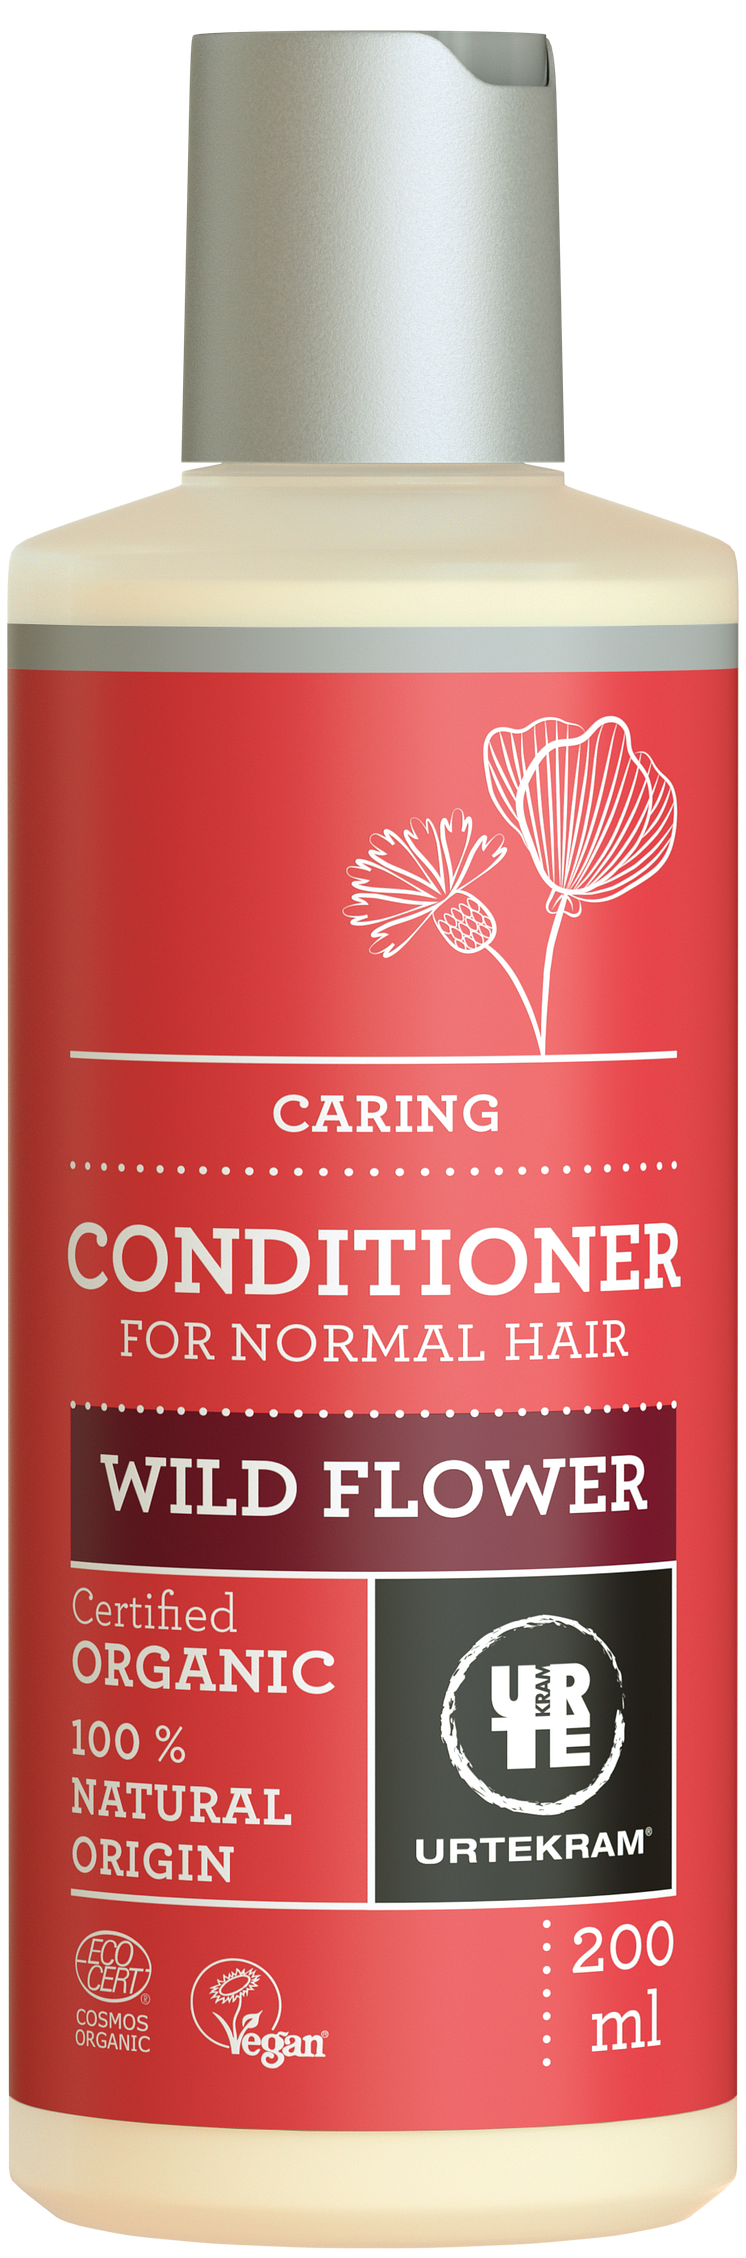 7001415_Wild Flower Conditioner 200ml